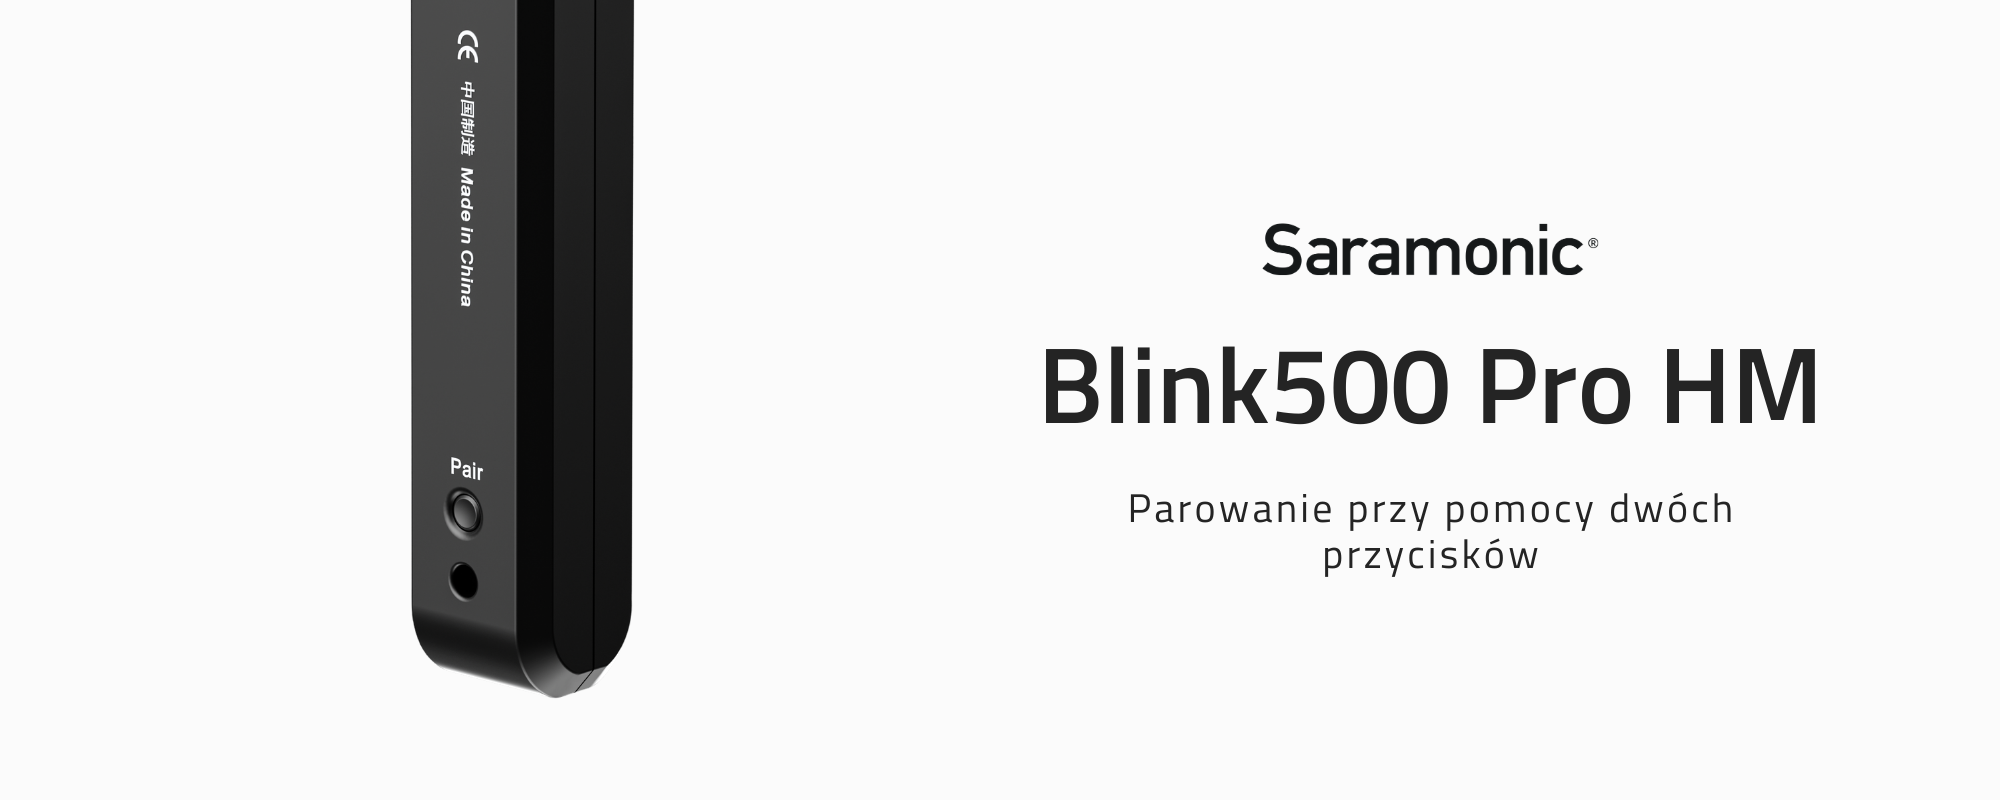 Połączenie uchwytu Blink500 Pro HM za pomocą dwóch przycisków)